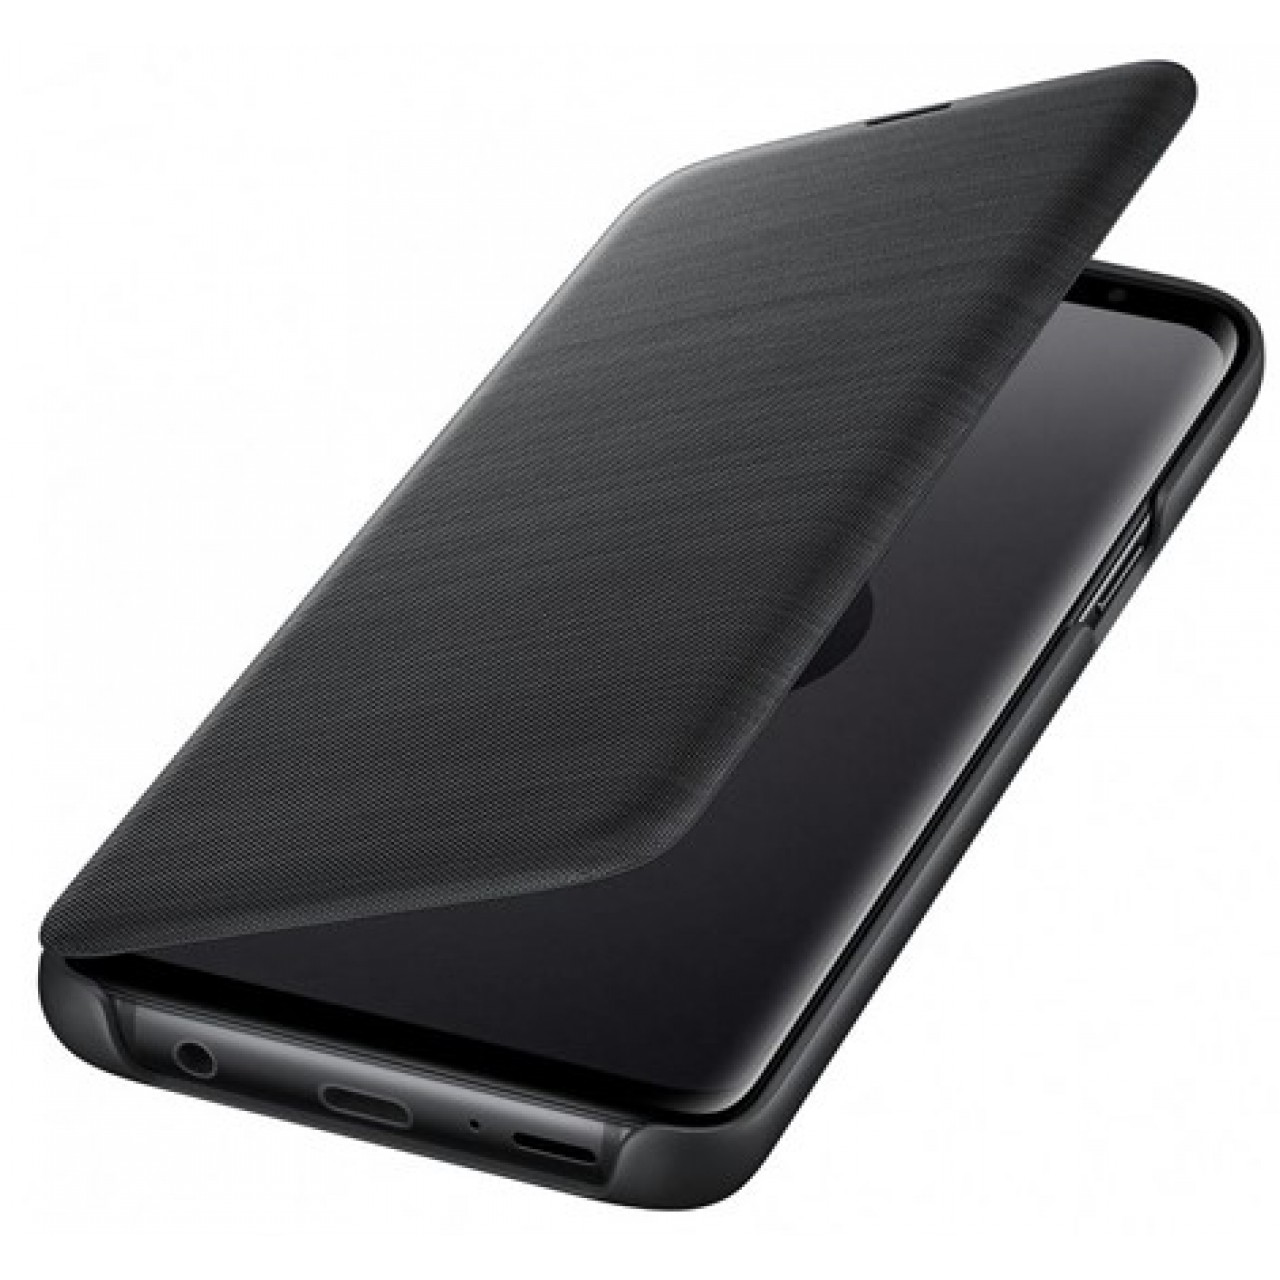 Θήκη Samsung Galaxy S9 (G960F) LED View Cover Original - 3575 - Μαύρο